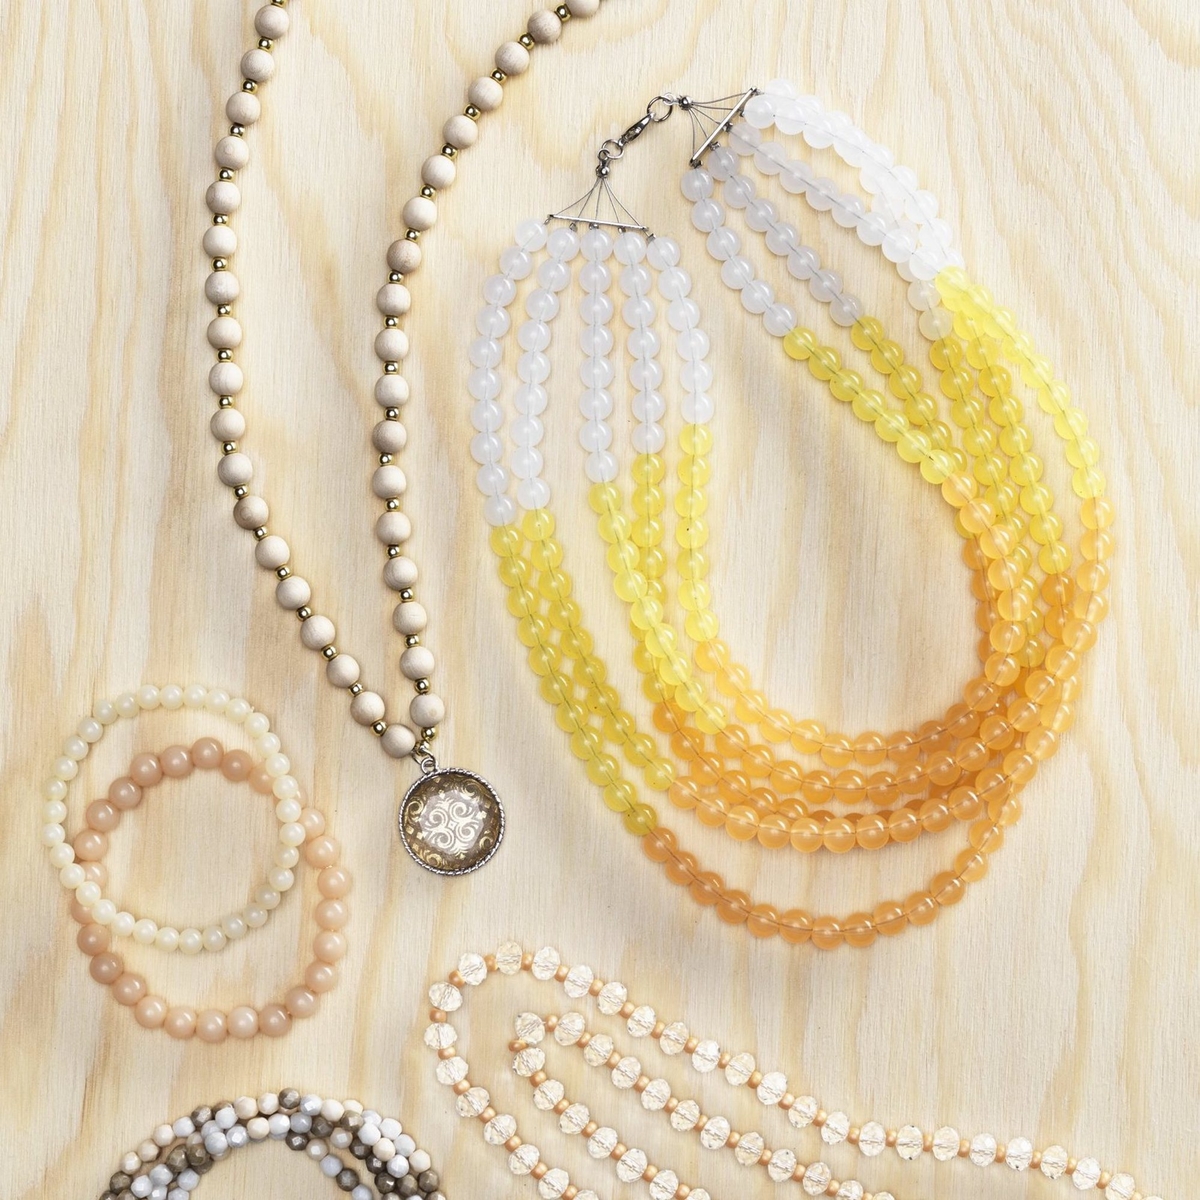 Smykker af perler med en enkel teknik